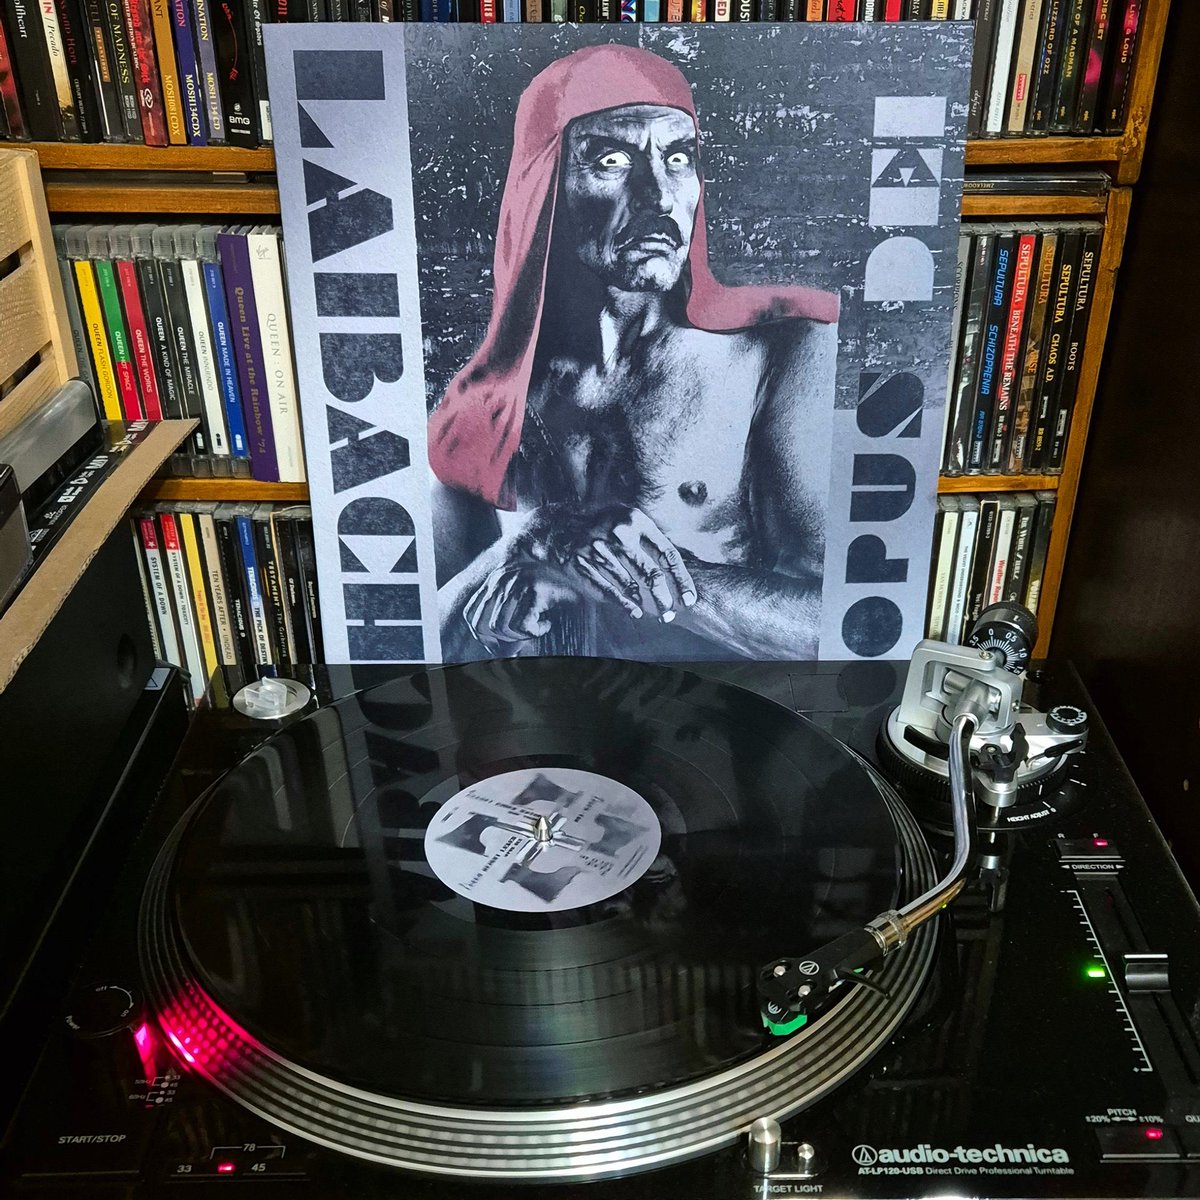 Leben heisst Leben (Opus Dei) ... priprave 😉#nowspinning #Laibach #OpusDei #Vinyl #remastered #classicalbums #myvinylcollection